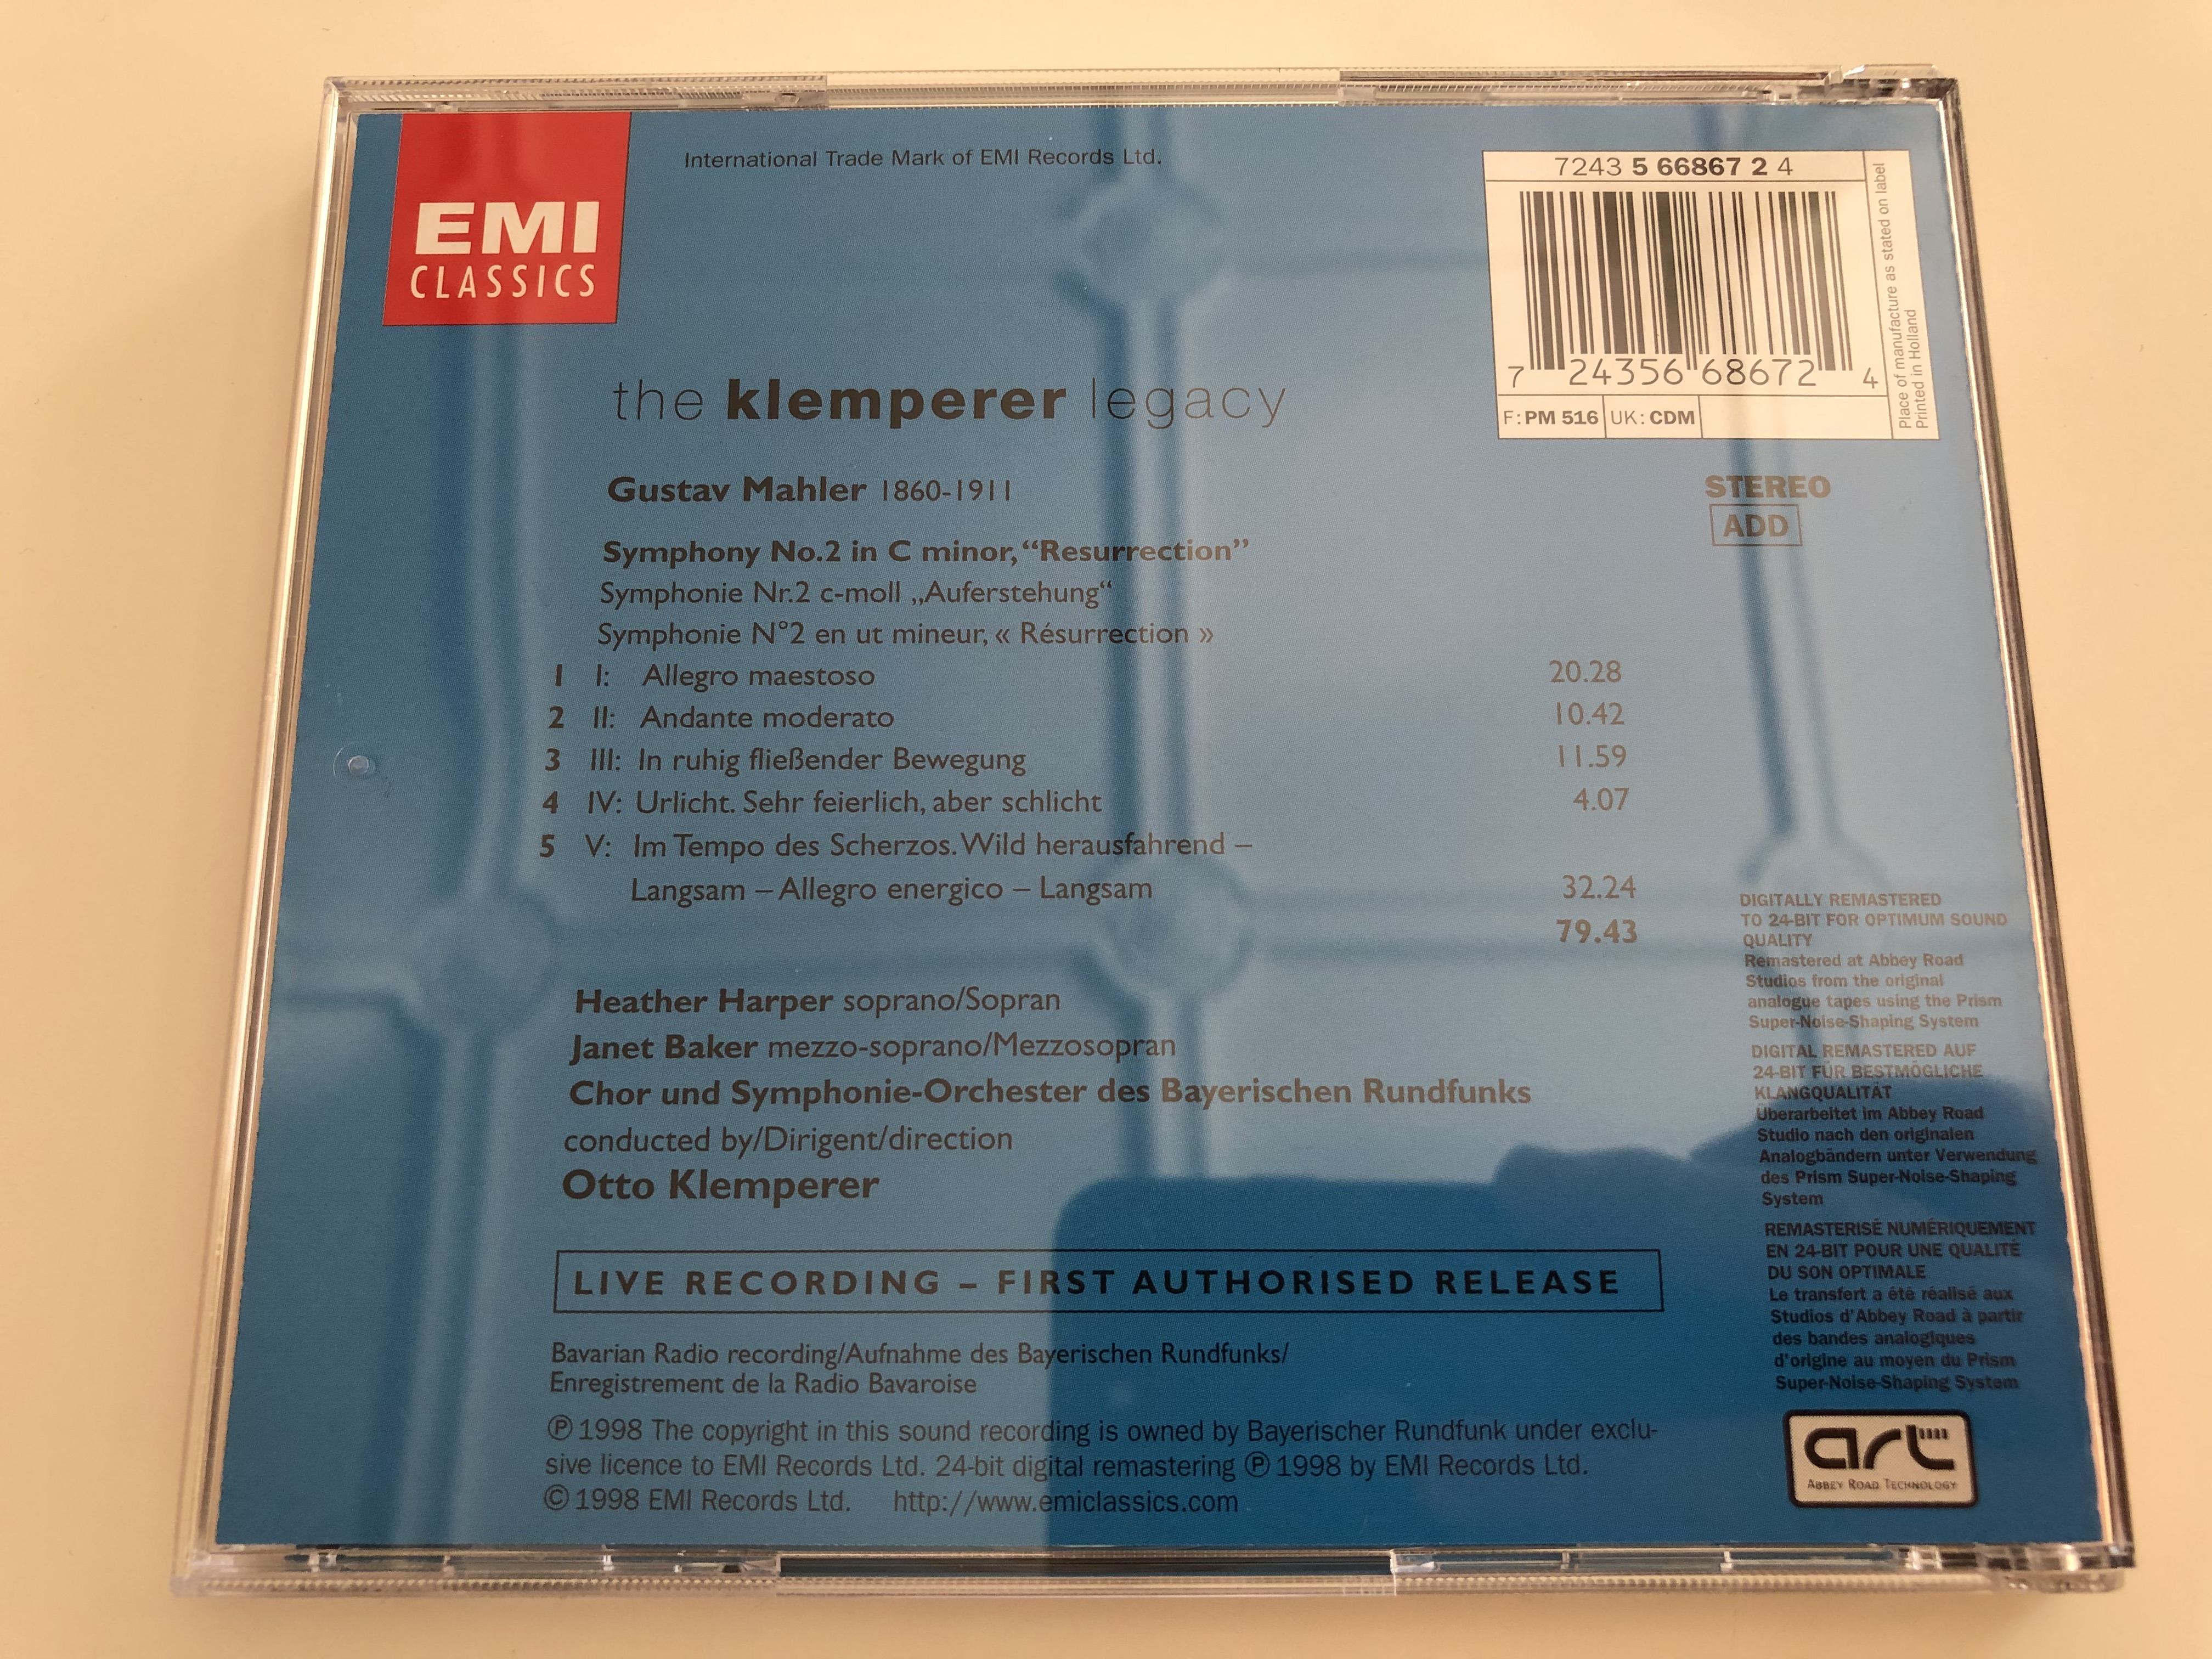 the-klemperer-legacy-symphonie-2-auferstehung-resurrection-heather-harper-janet-baker-chor-und-symphonie-orchester-des-bayerischen-rundfunks-live-recording-first-authorised-release-emi-classics-audio-cd-1998-6-.jpg